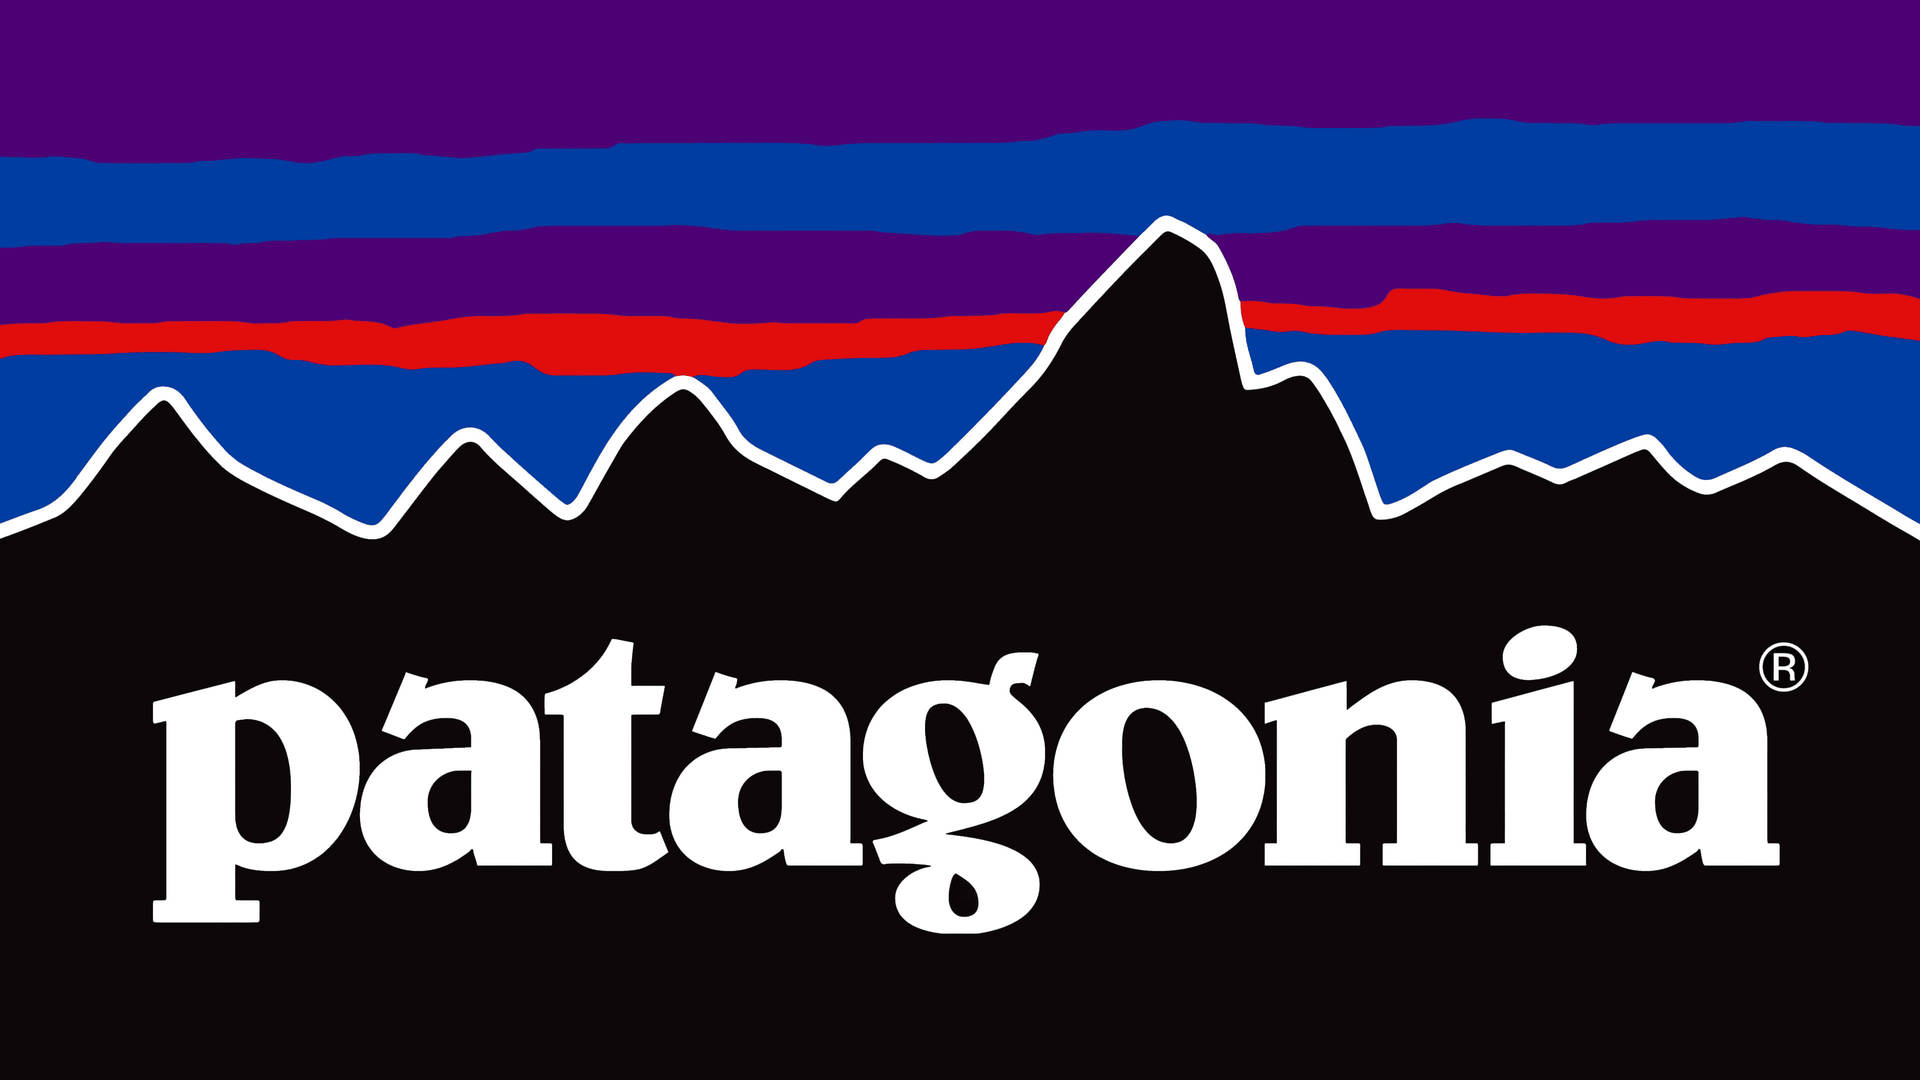 Patagonialila Logotyp (assuming 